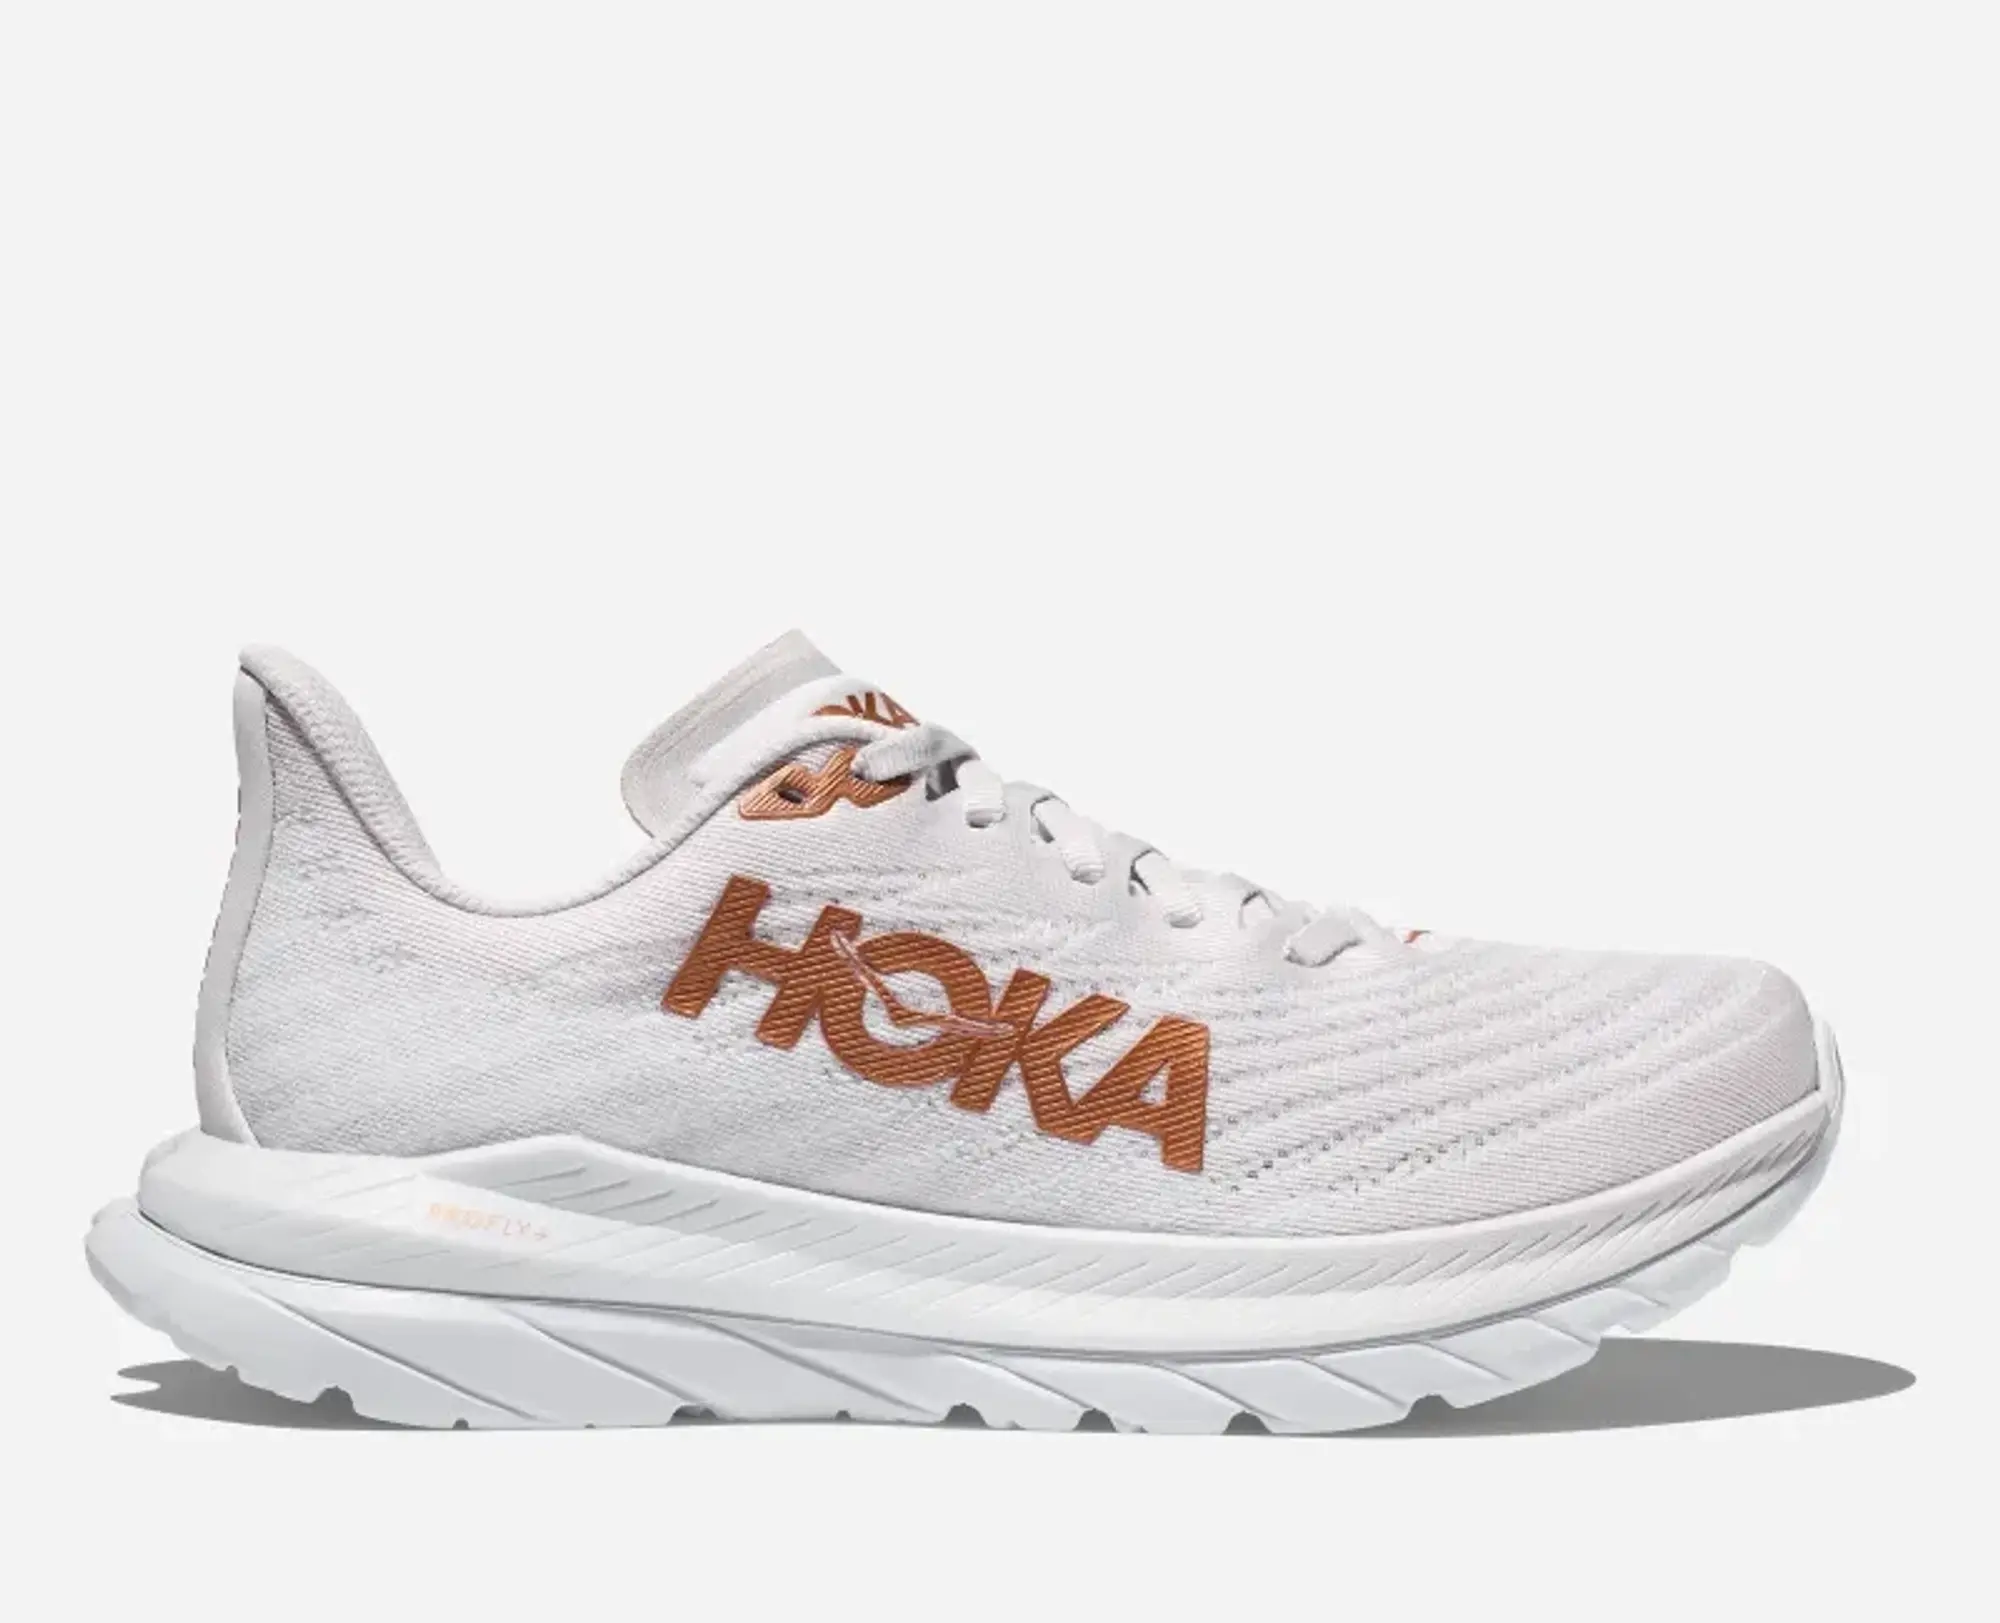 Hoka One One HOKA Men's Mach 5 Shoes in White/Copper